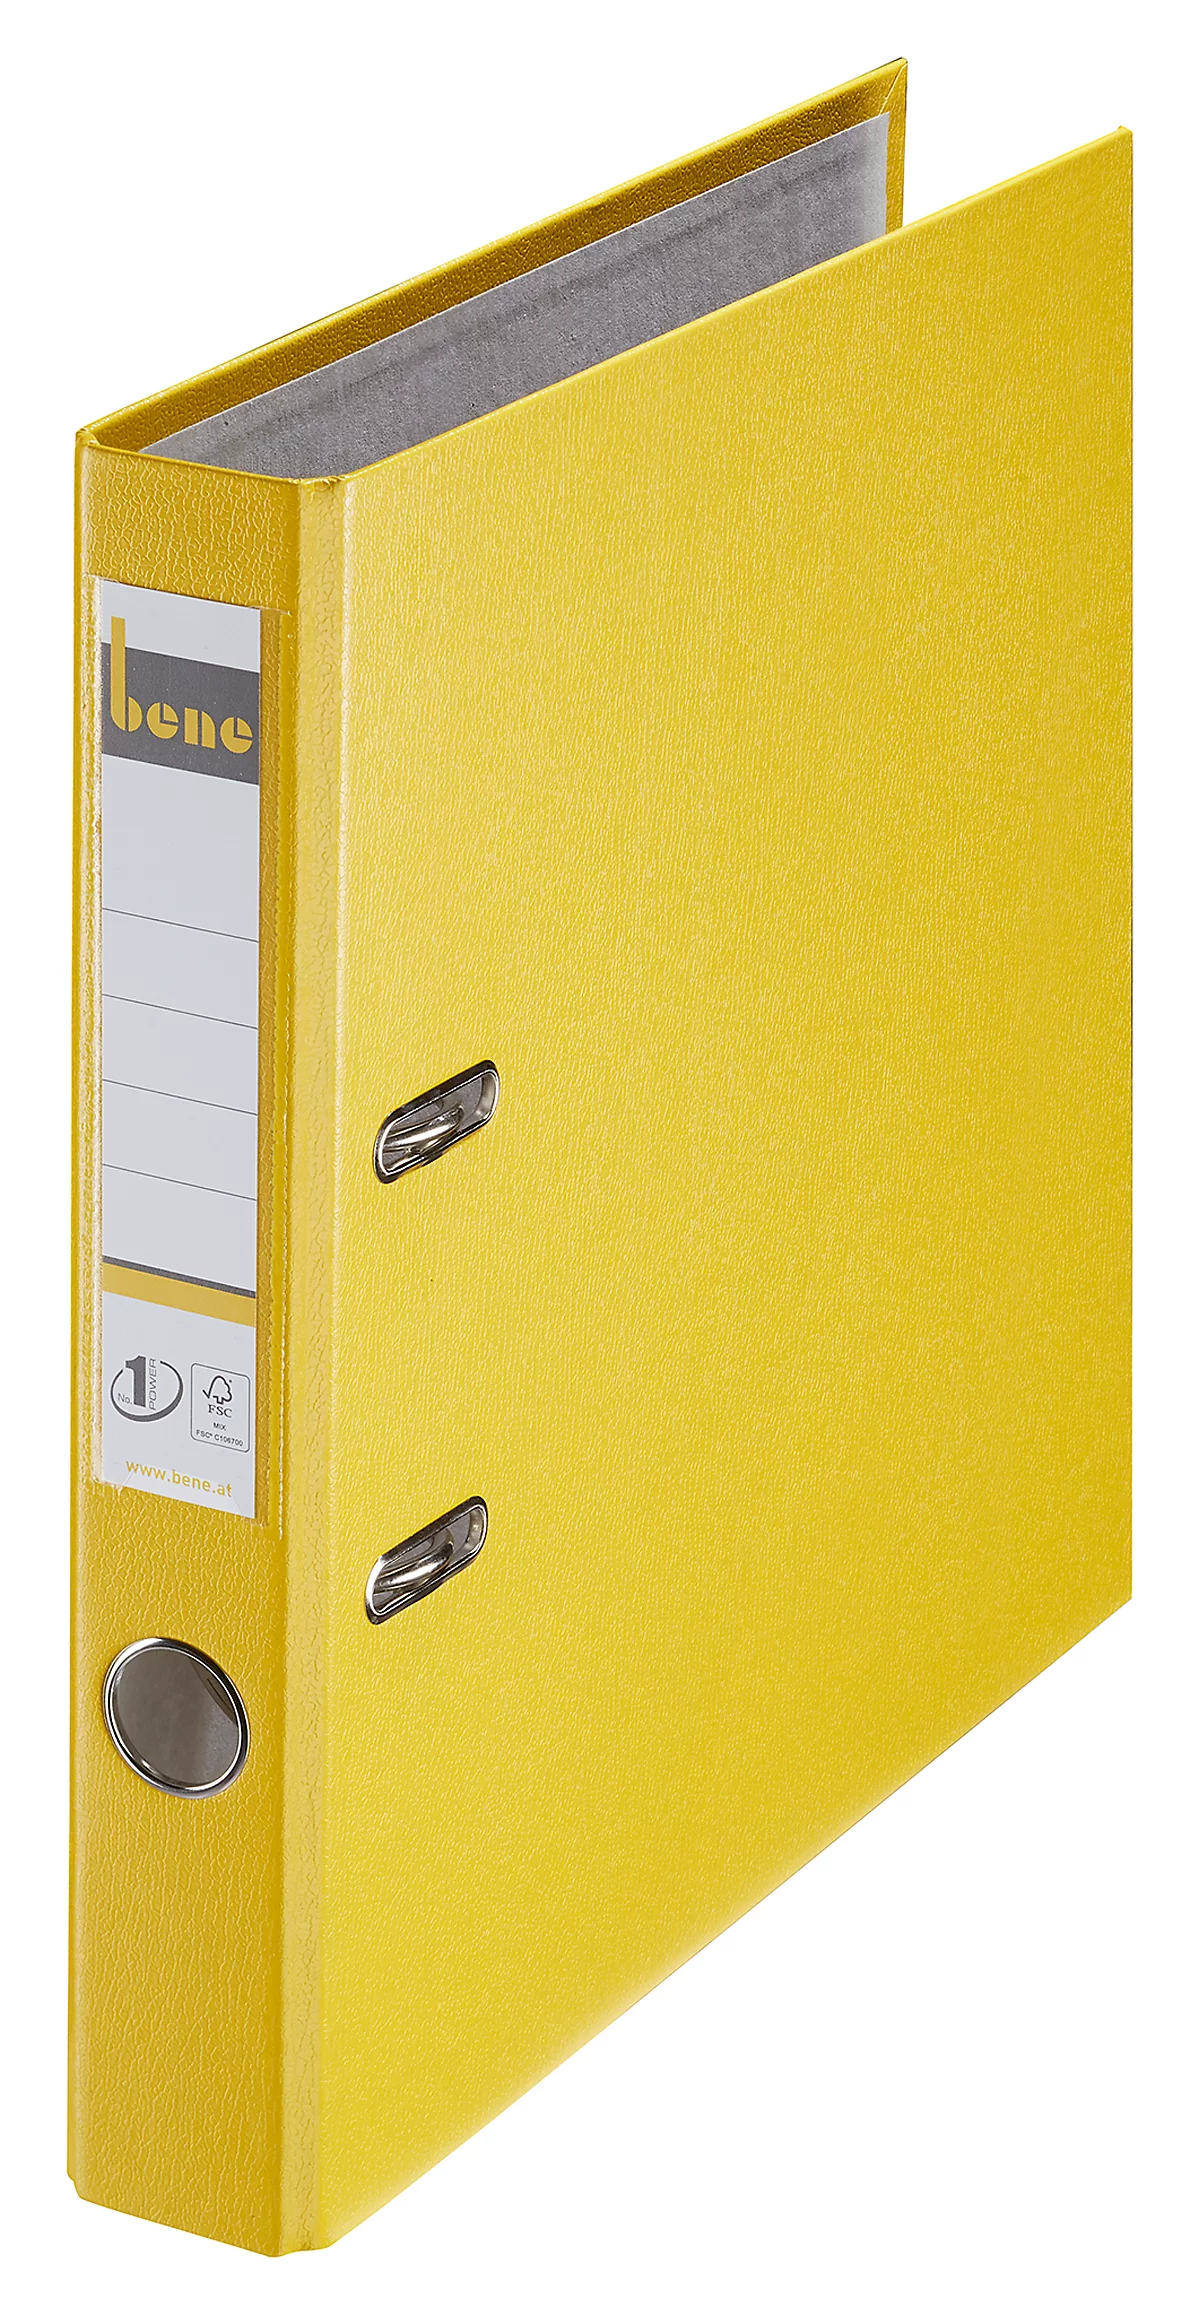 bene Kunststoff-Briefordner, gelb, 45 mm Rückenbr.